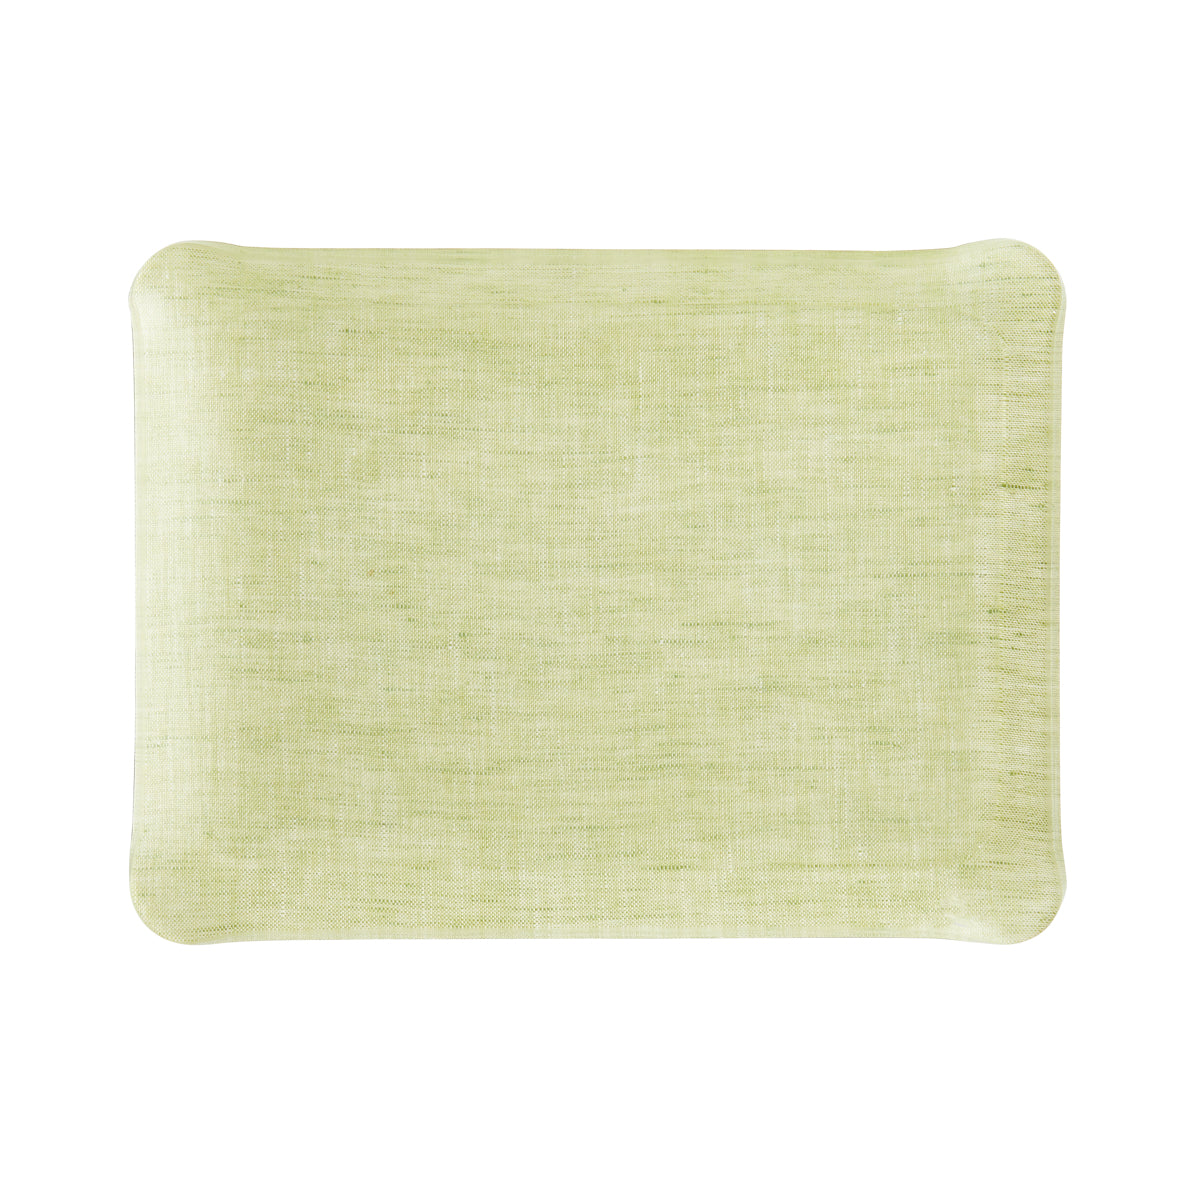 Nina Campbell Fabric Tray Small - Green